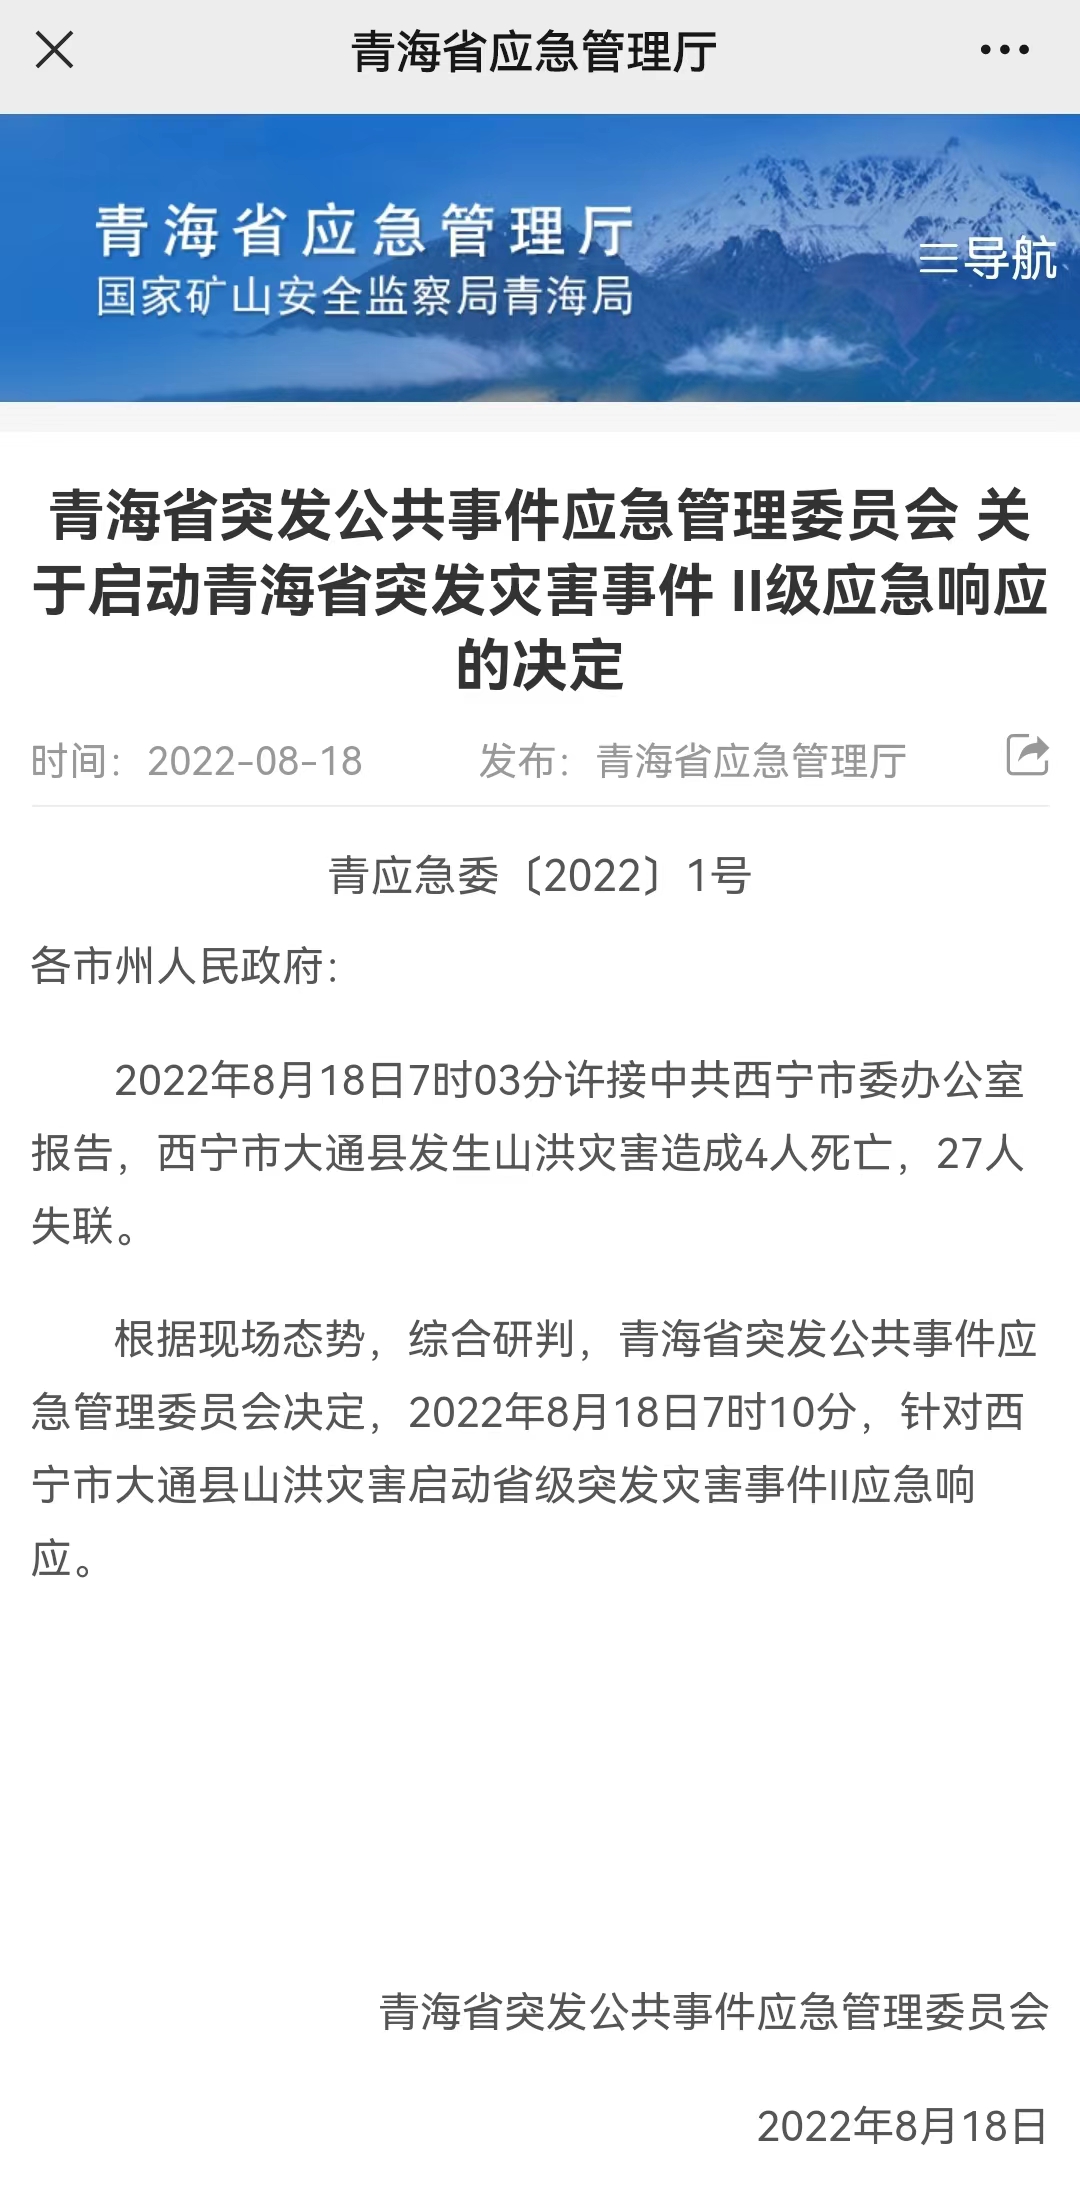 青海西宁市大通县发生山洪灾害 造成4人死亡27人失联